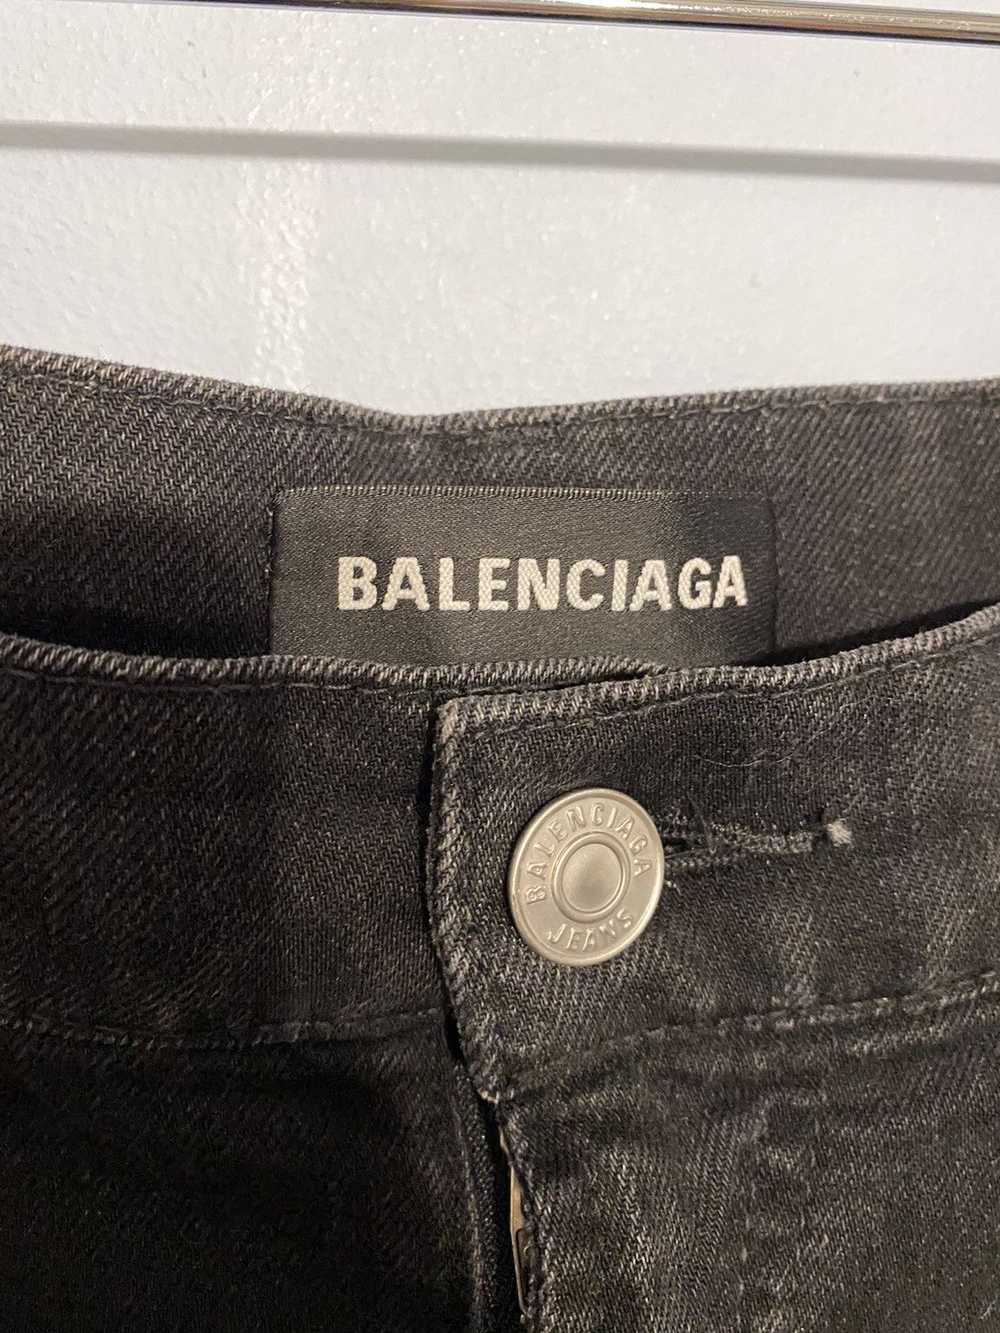 Balenciaga Balenciaga Black Denim Jeans - image 6